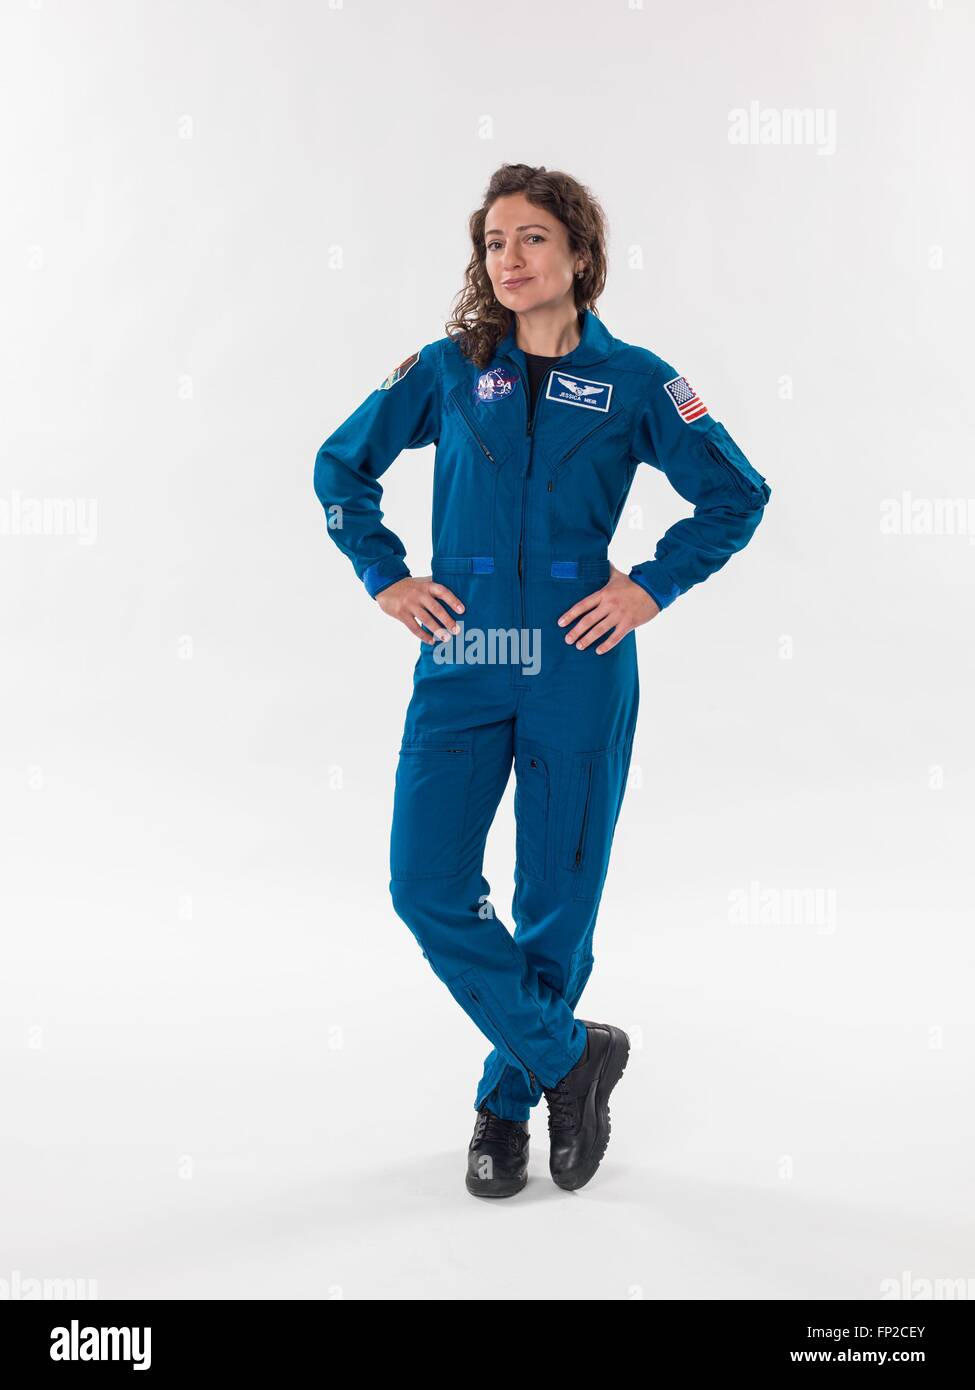 Astronauta americano Jessica Meir ritratto ufficiale blu da indossare tuta di volo presso il Johnson Space Center Febbraio 24, 2016 a Houston, Texas. Foto Stock